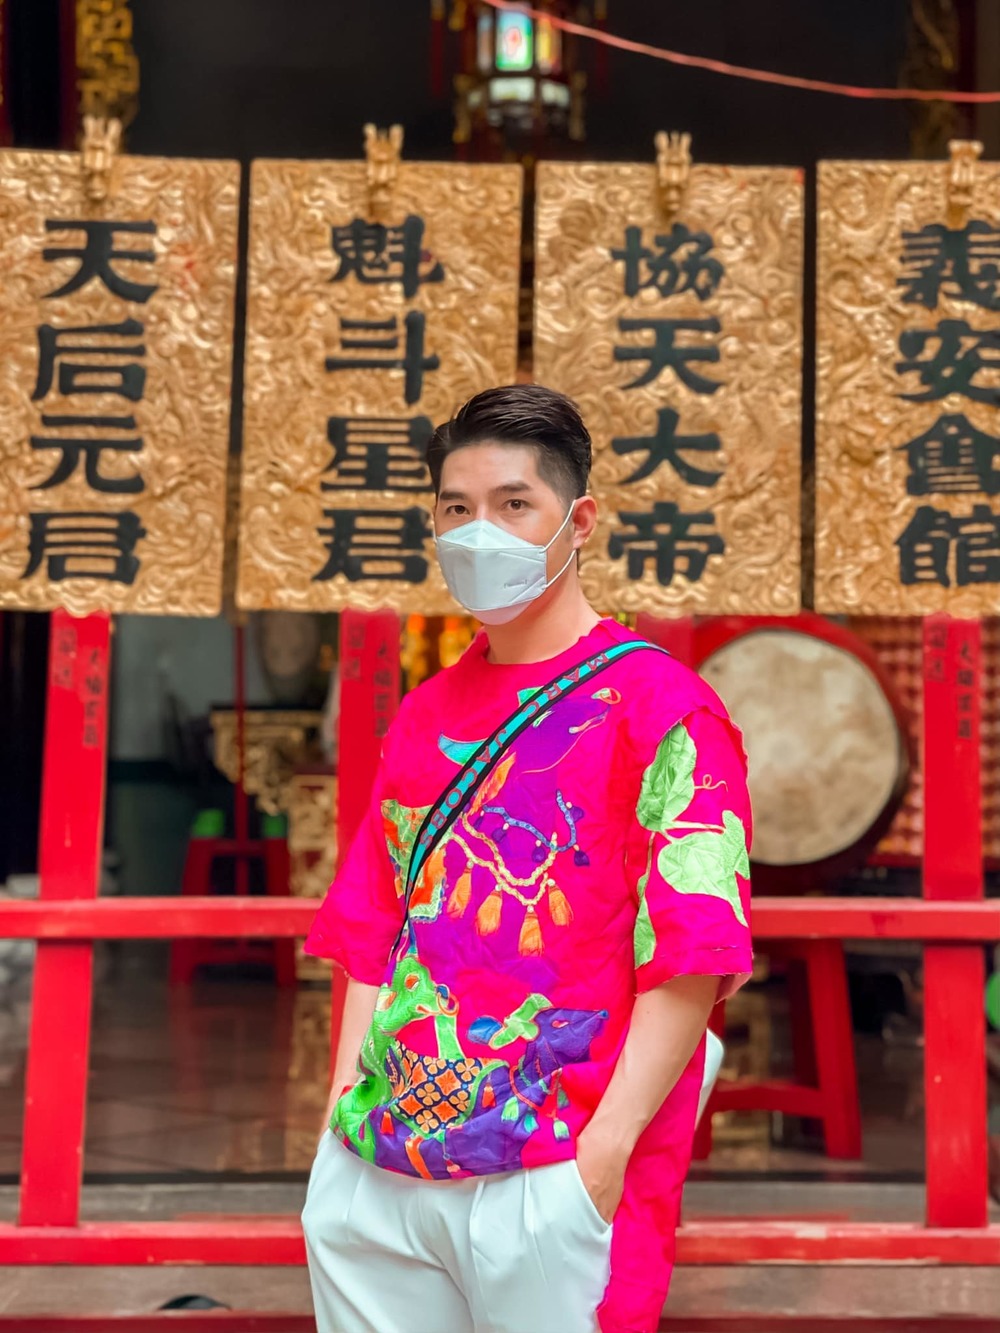  
Đạo diễn Nguyễn Hưng Phúc cũng chọn chiếc áo thun hồng hoạ tiết con trâu để đi chùa ngày mùng 1 Tết. (Ảnh: FBNV)